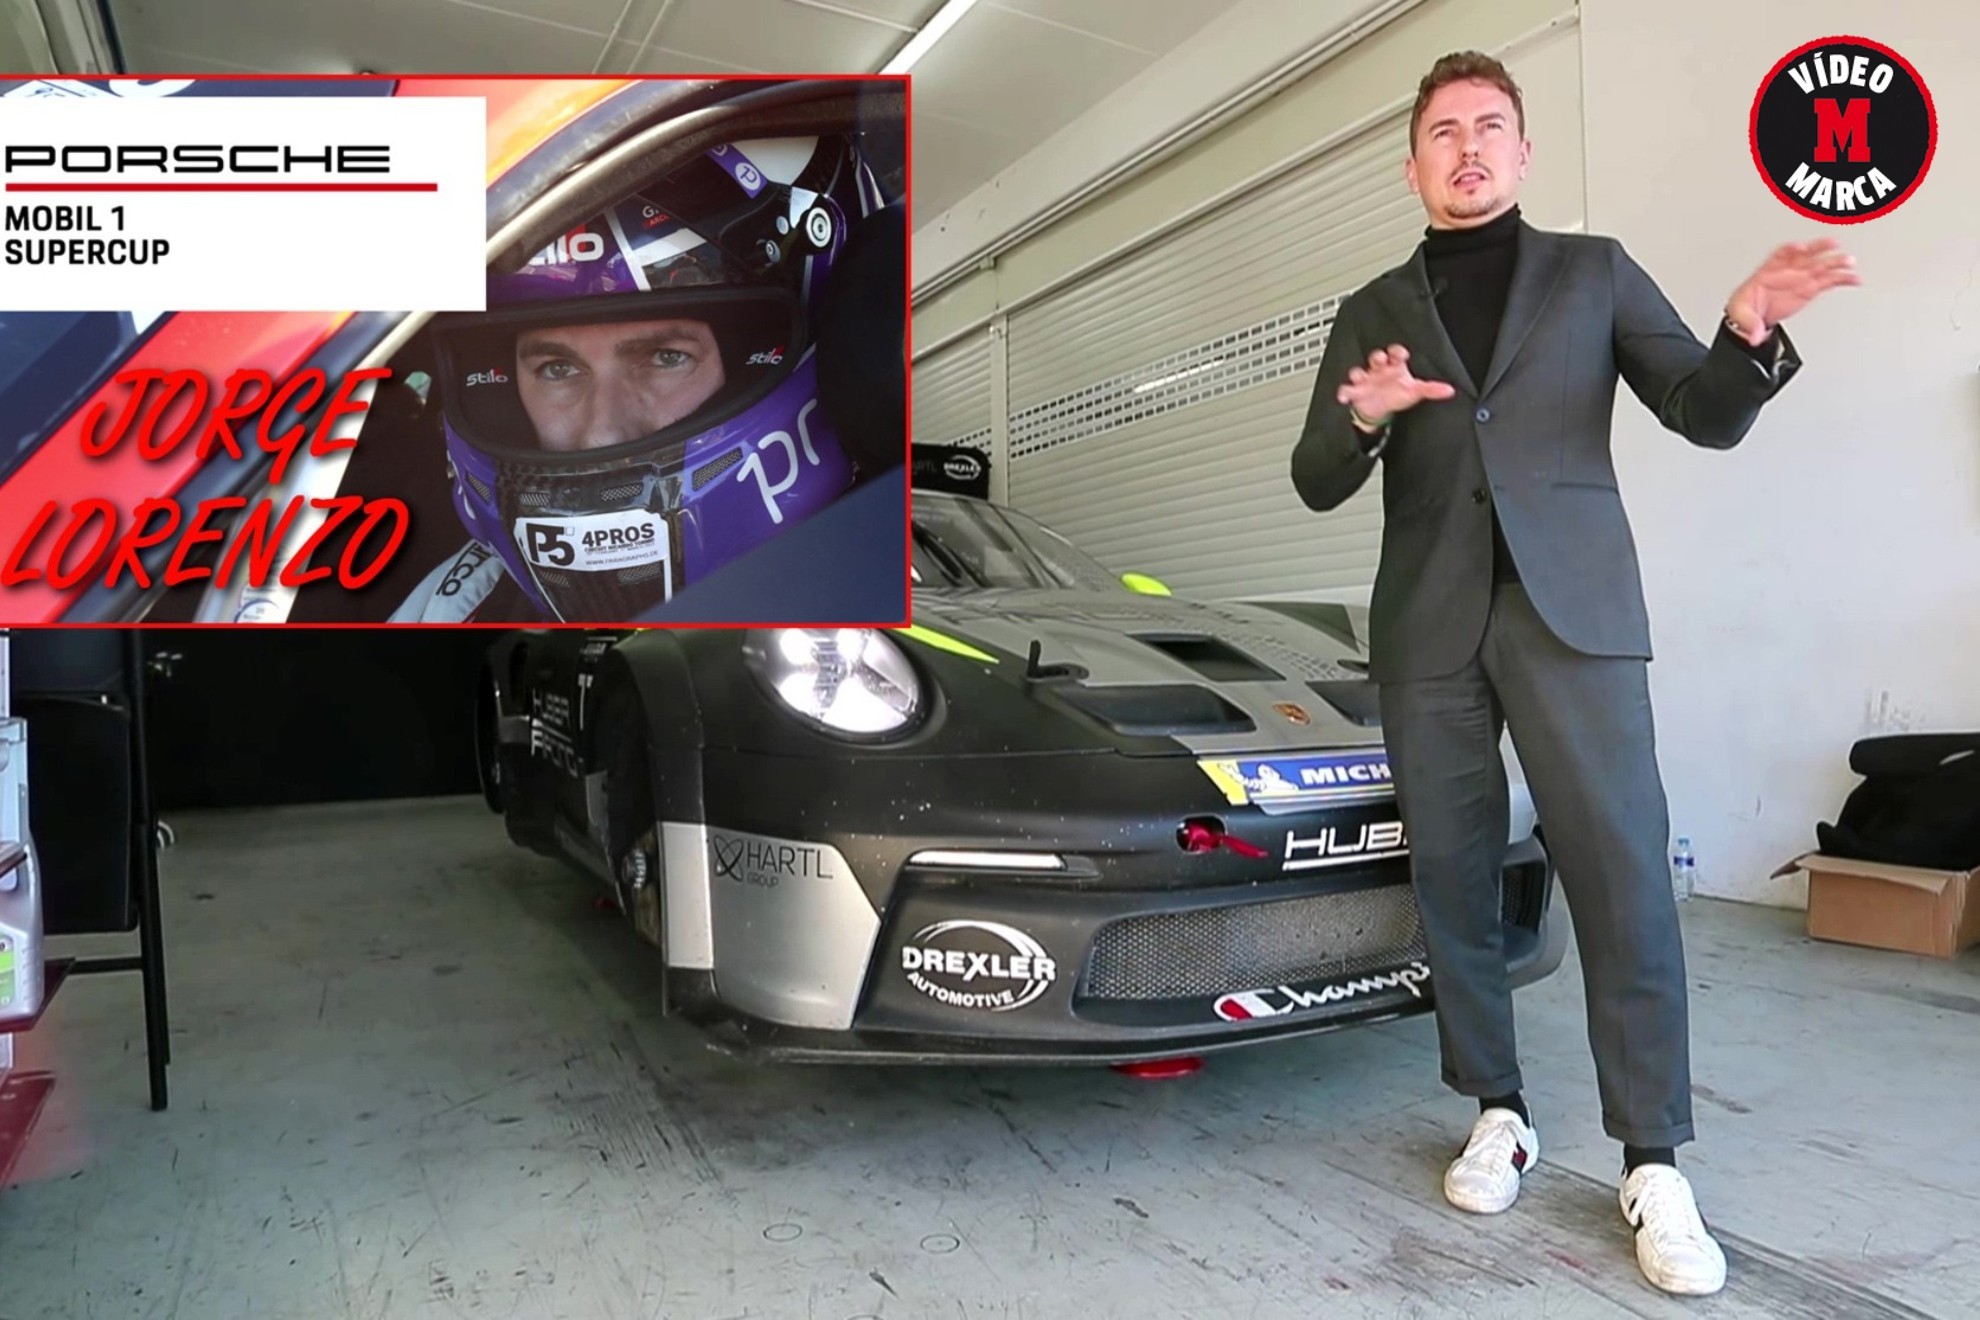 Jorge Lorenzo explica qué es la Porsche Supercup y cómo llegó a ella